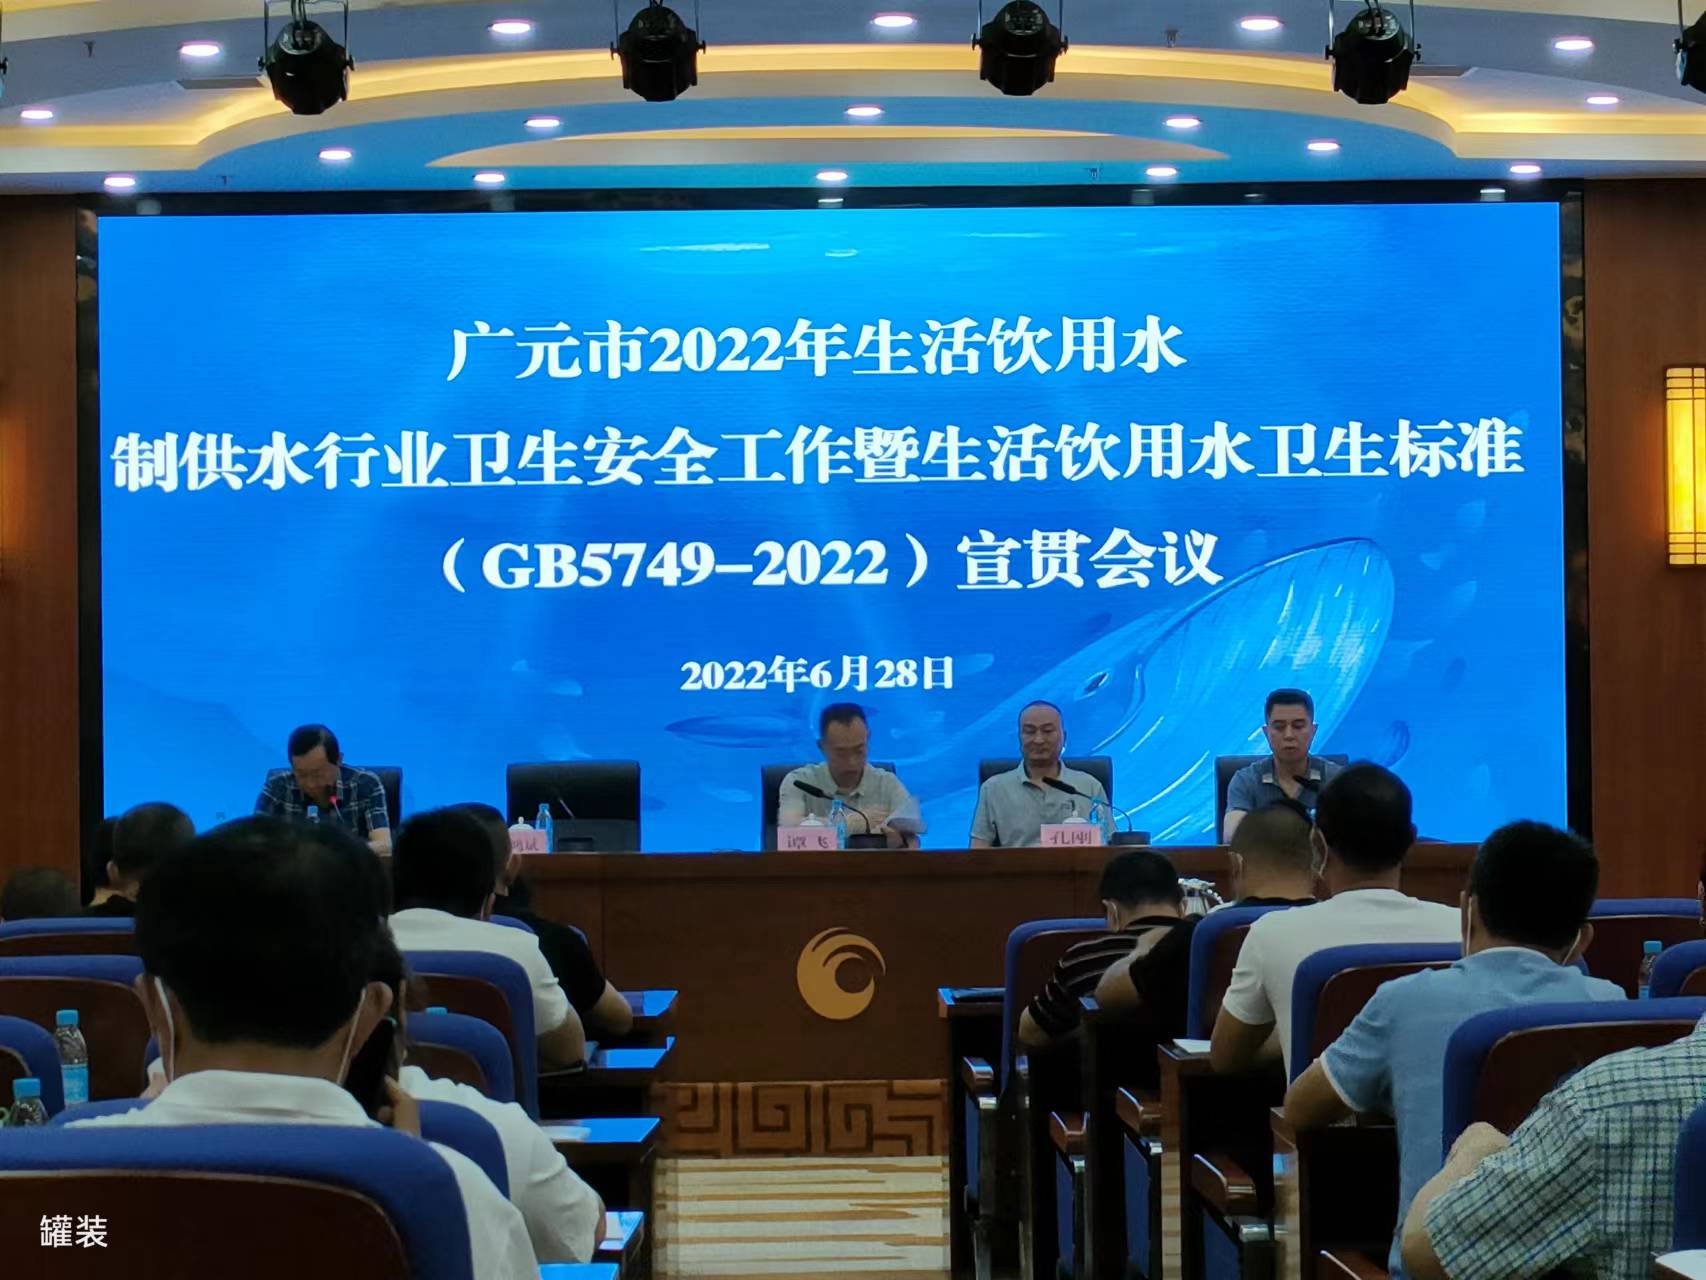 热烈祝贺广元市2022年生活饮用水制供水行业卫生安全工作暨《生活饮用水卫生标准》（GB5749-2022）宣贯会议顺利召开 